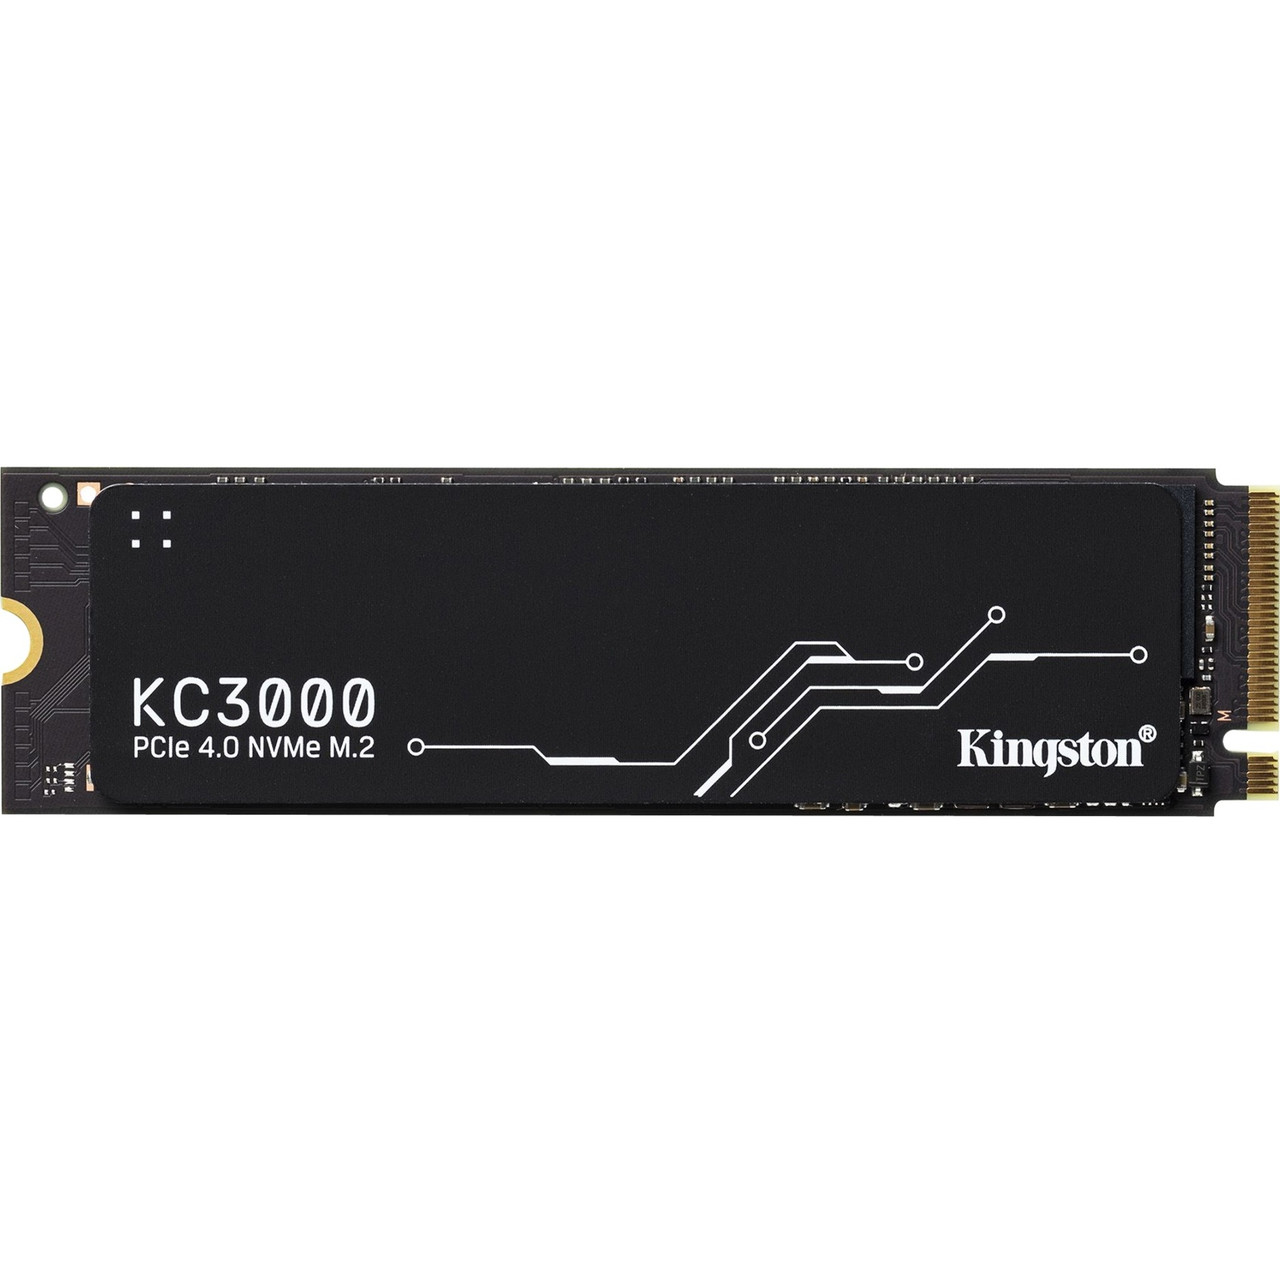 Kingston 1024G KC3000 PCIE 4.0 NVME M.2 SSD